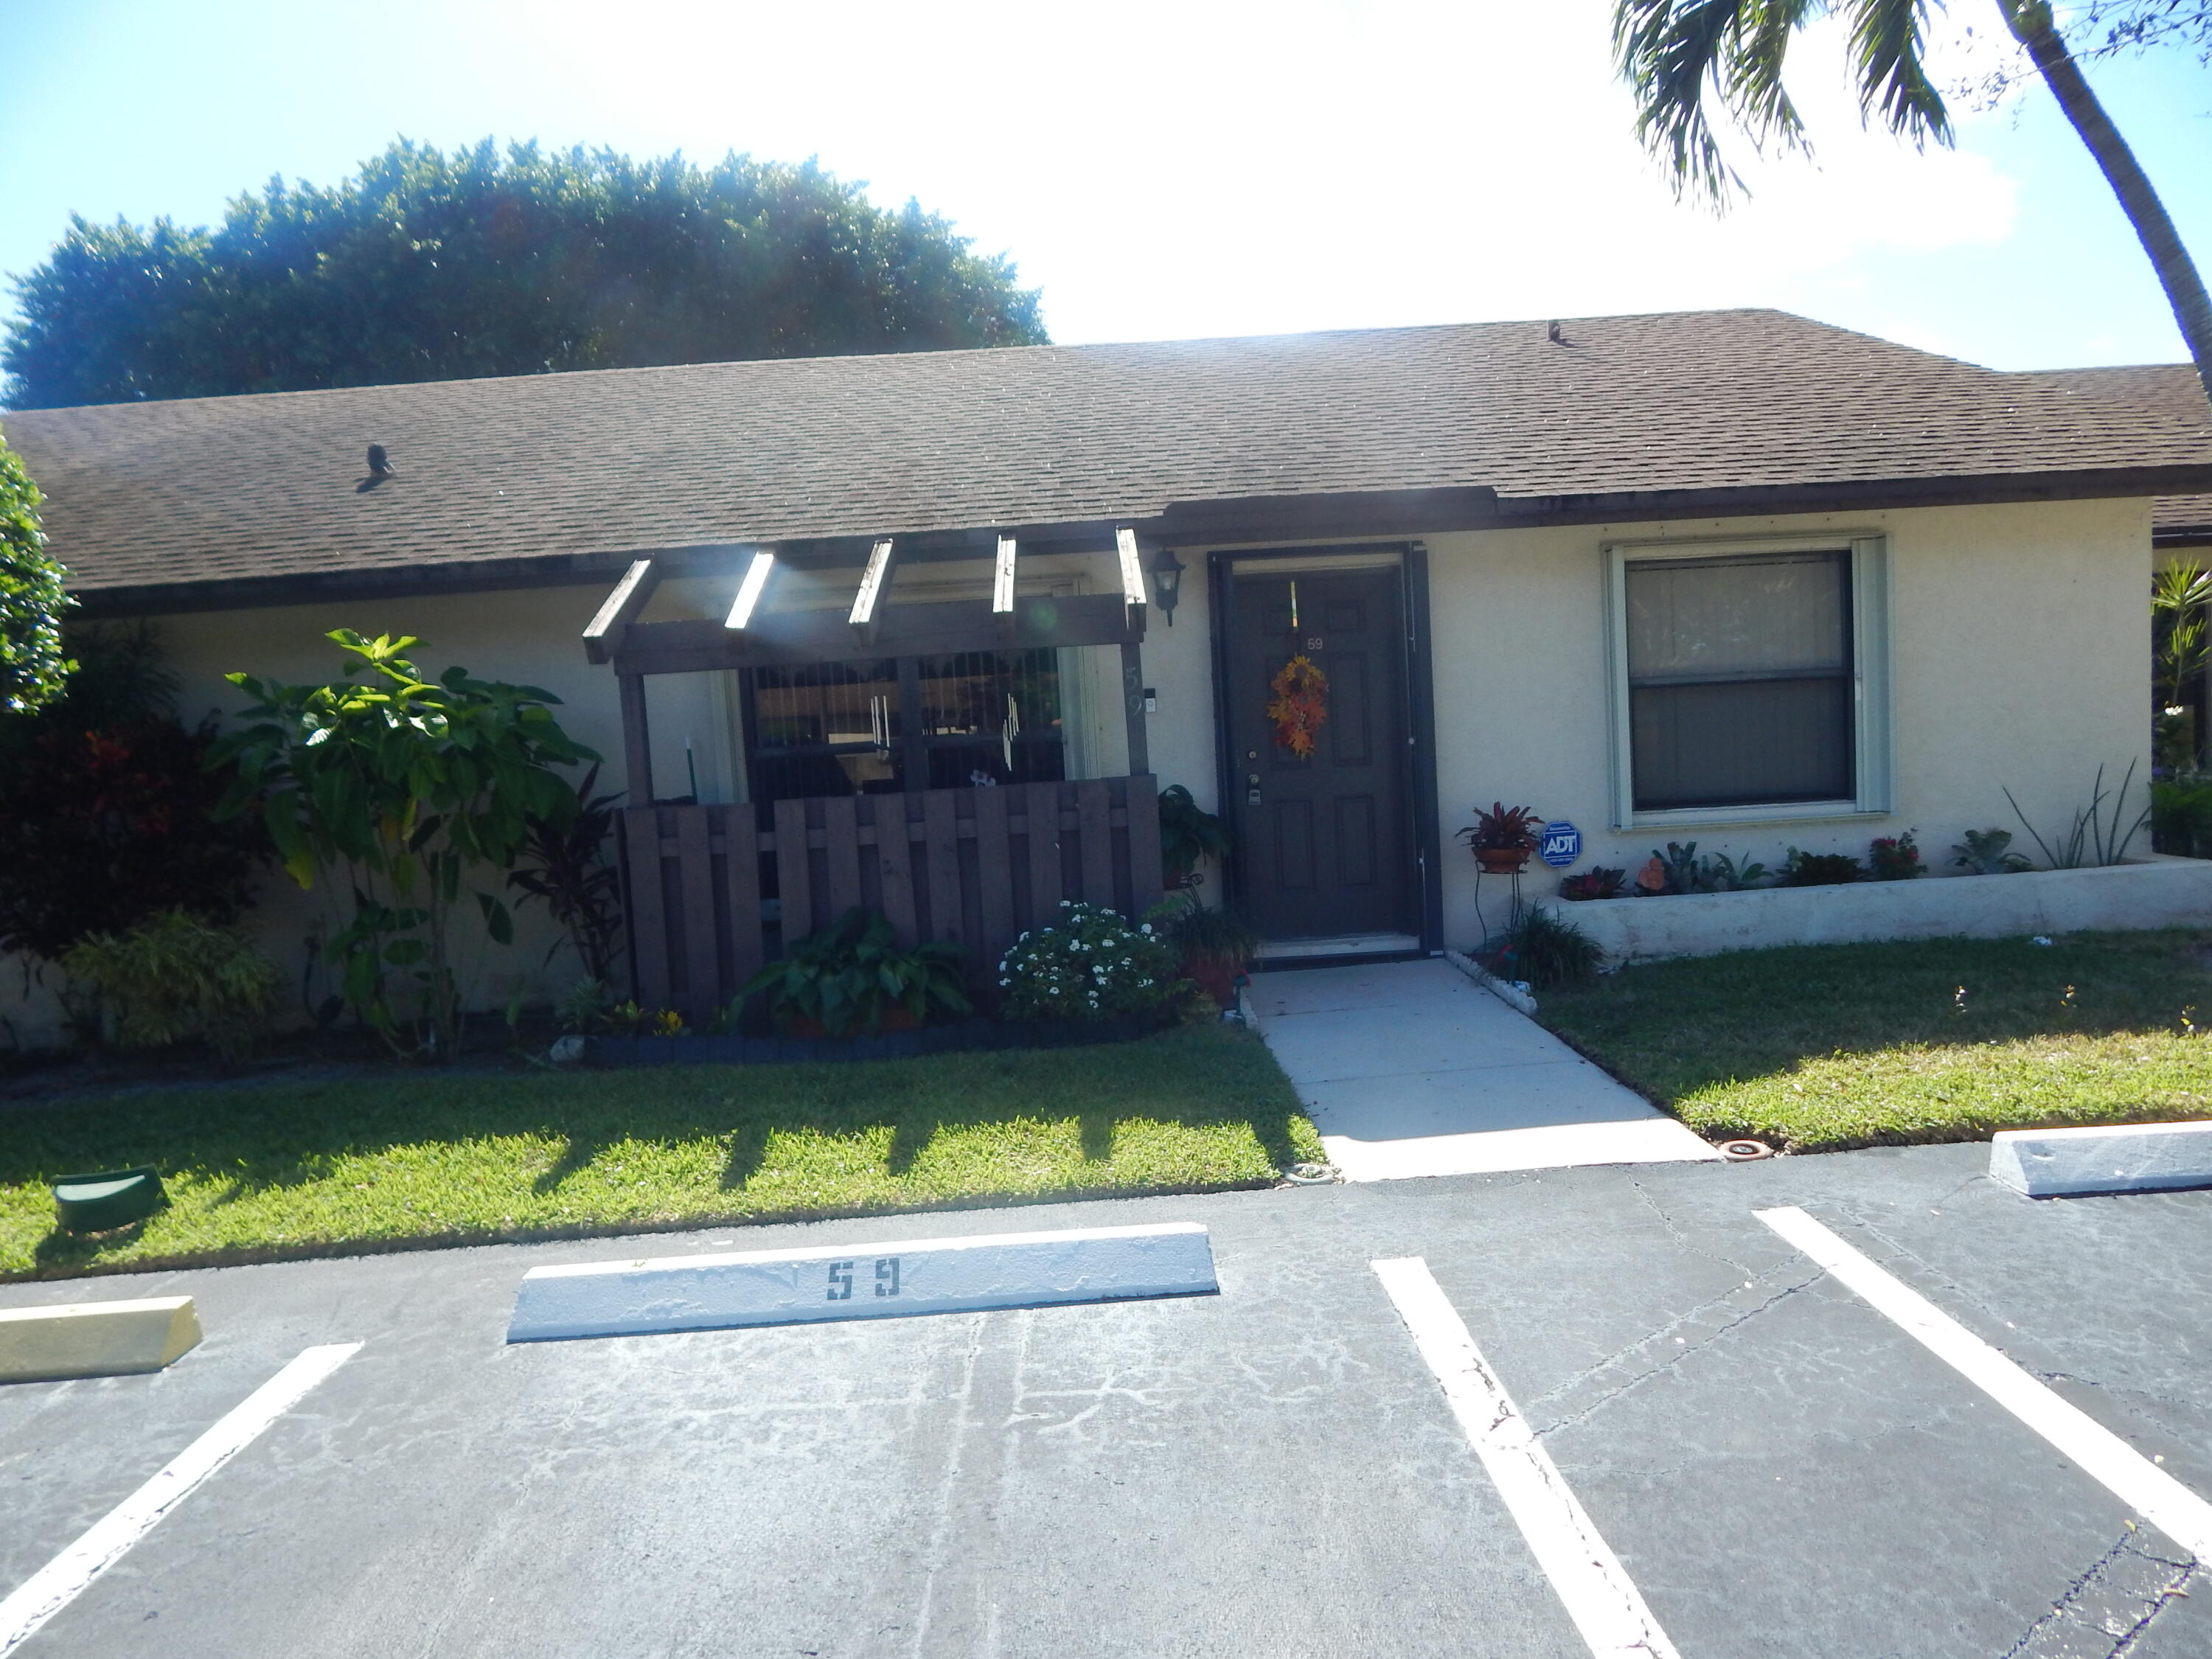 Property for Sale at 59 Via De Casas Norte, Boynton Beach, Palm Beach County, Florida - Bedrooms: 3 
Bathrooms: 2  - $295,000